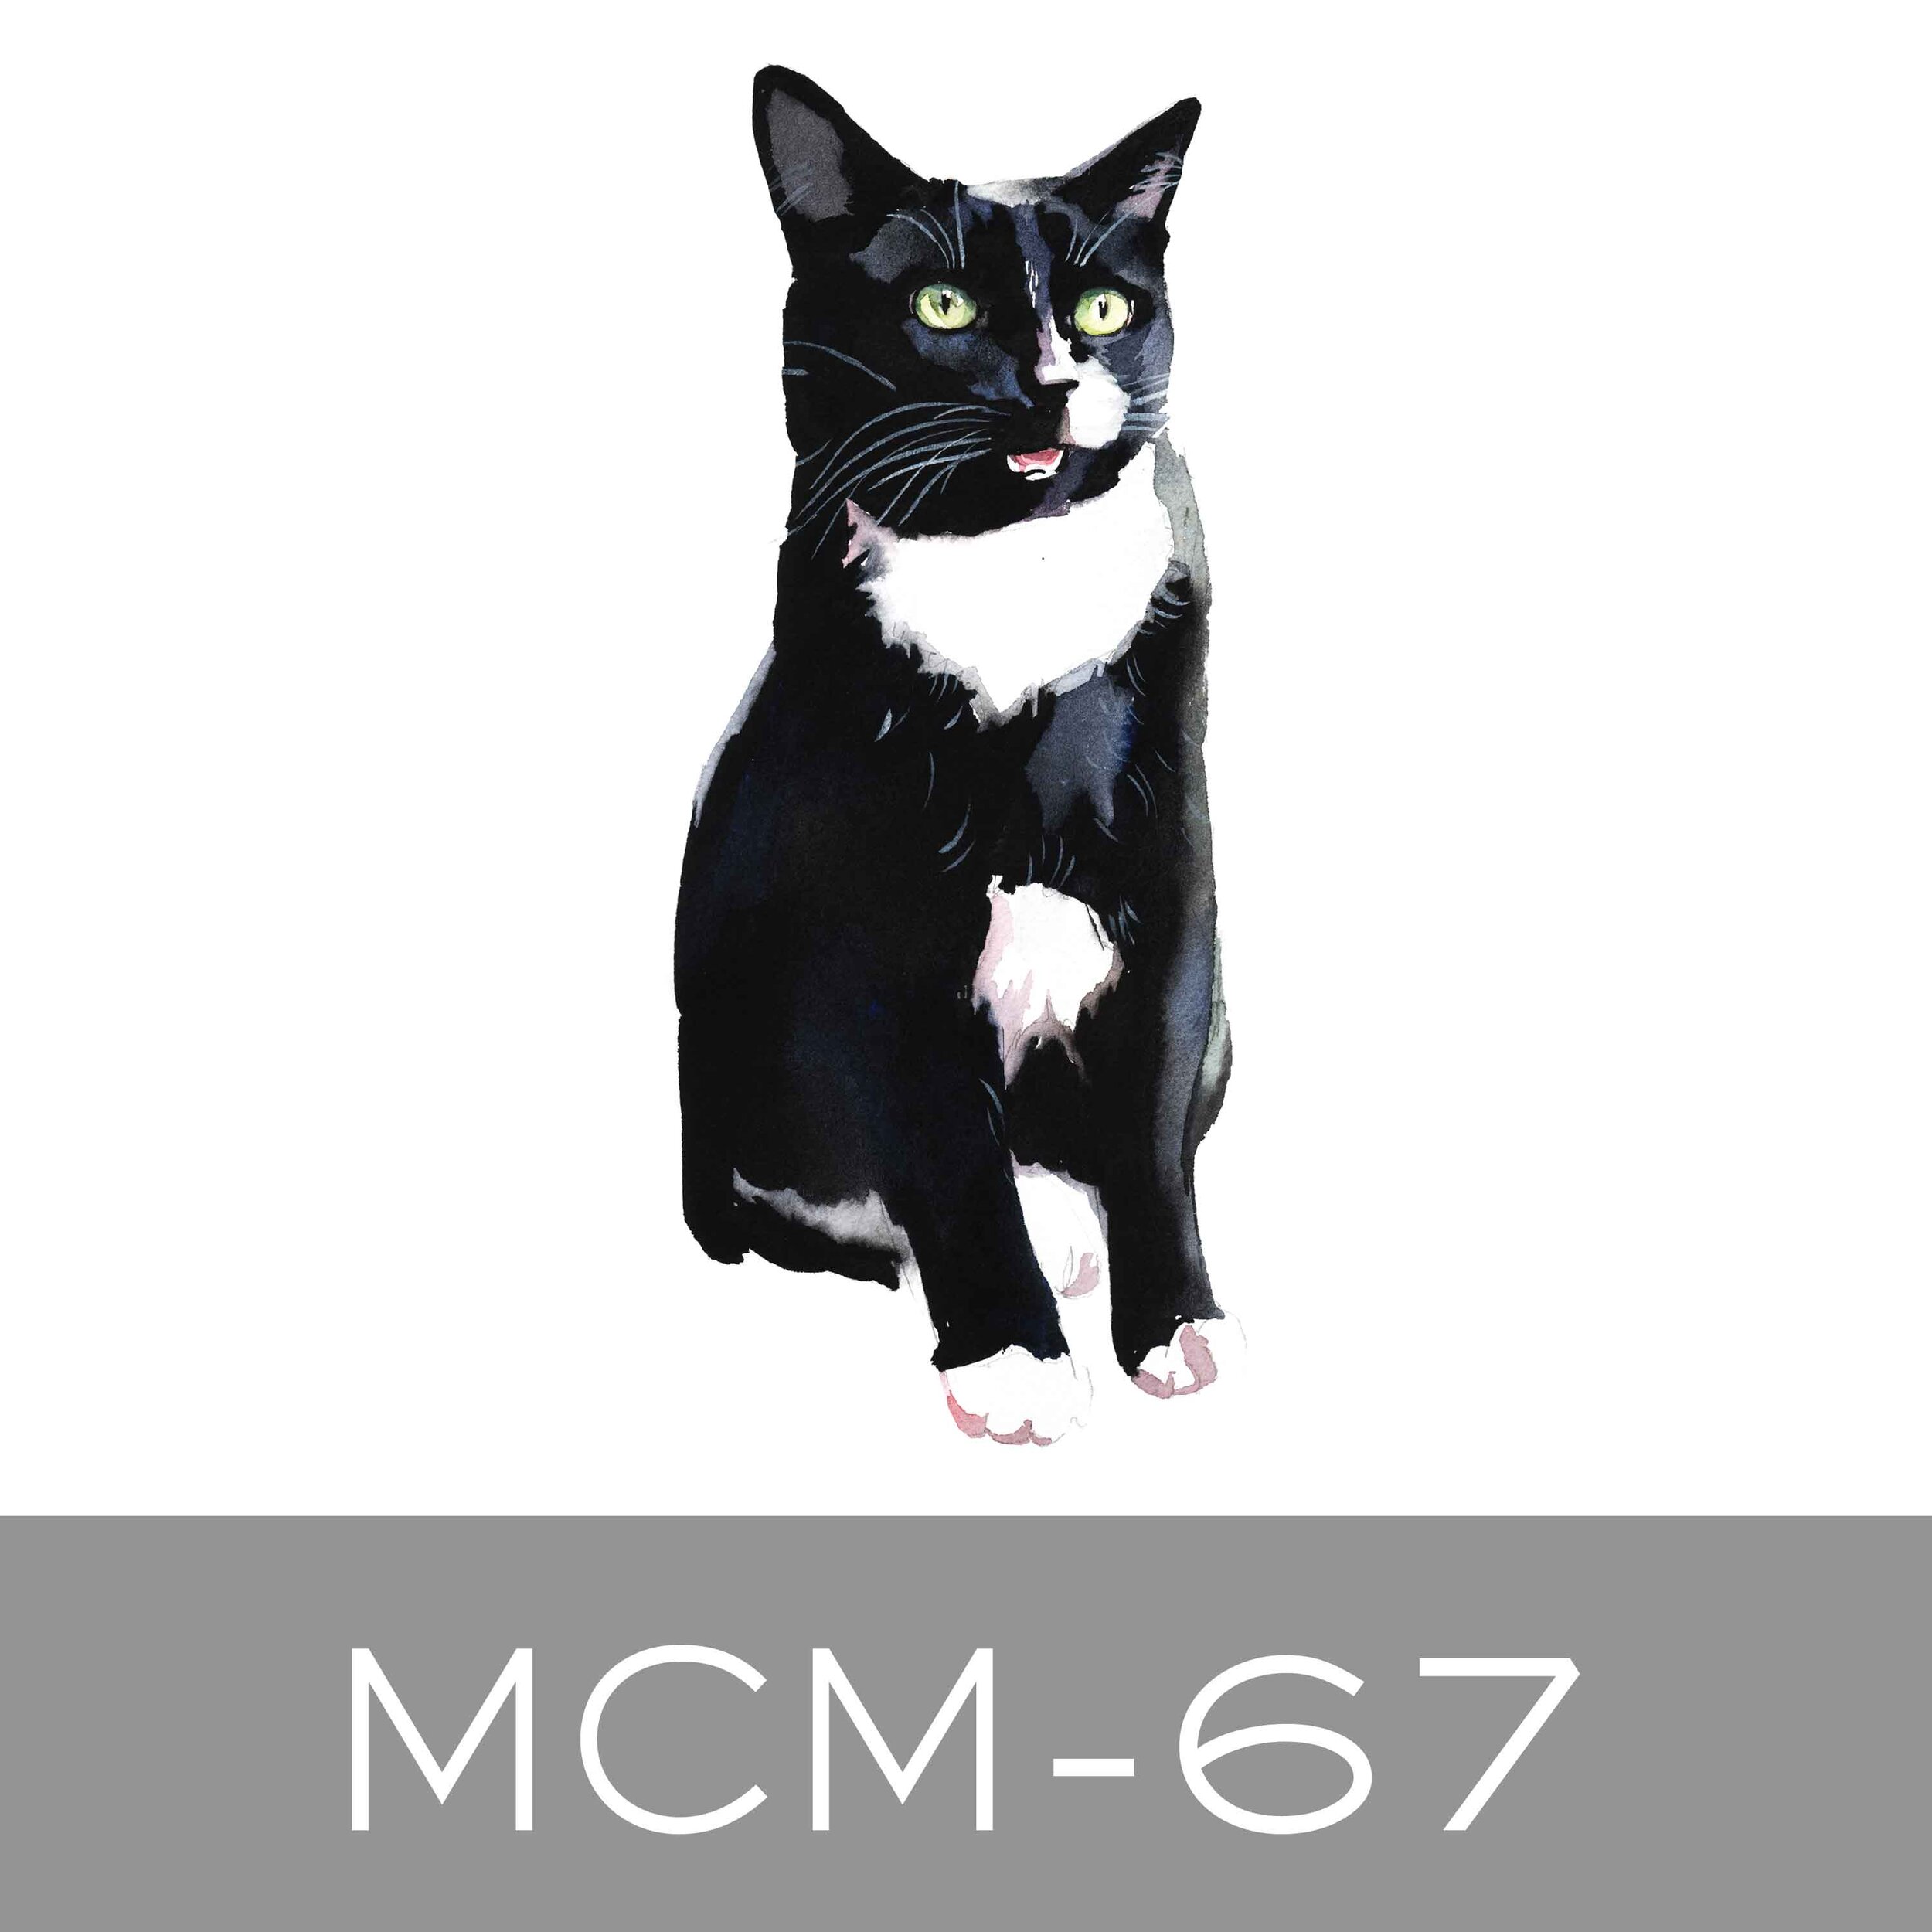 MCM-67.jpg